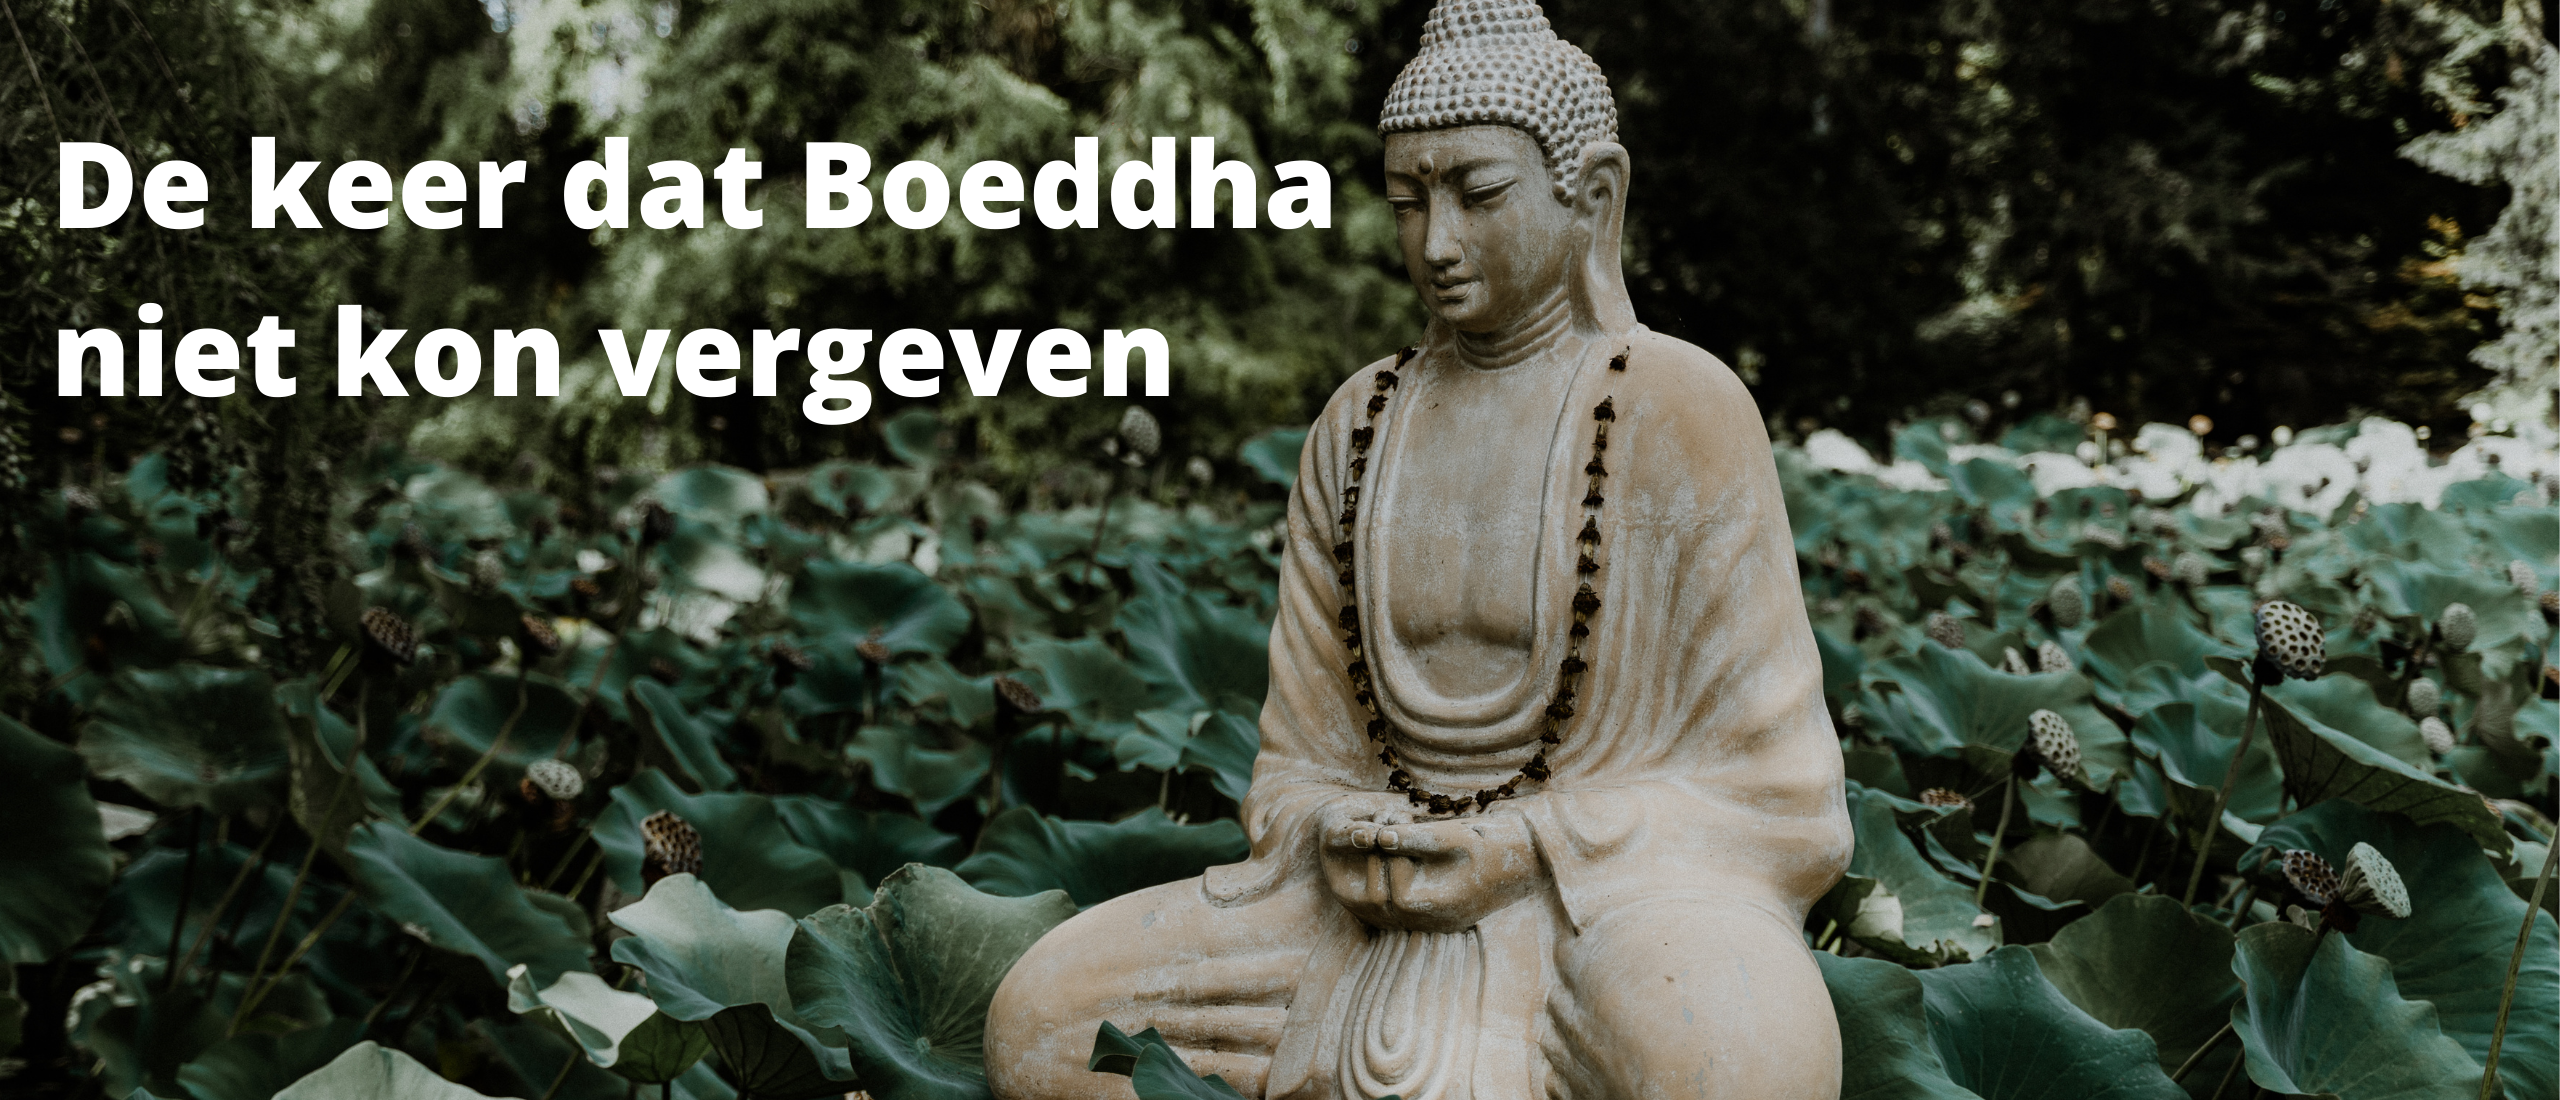 De keer dat Boeddha niet kon vergeven